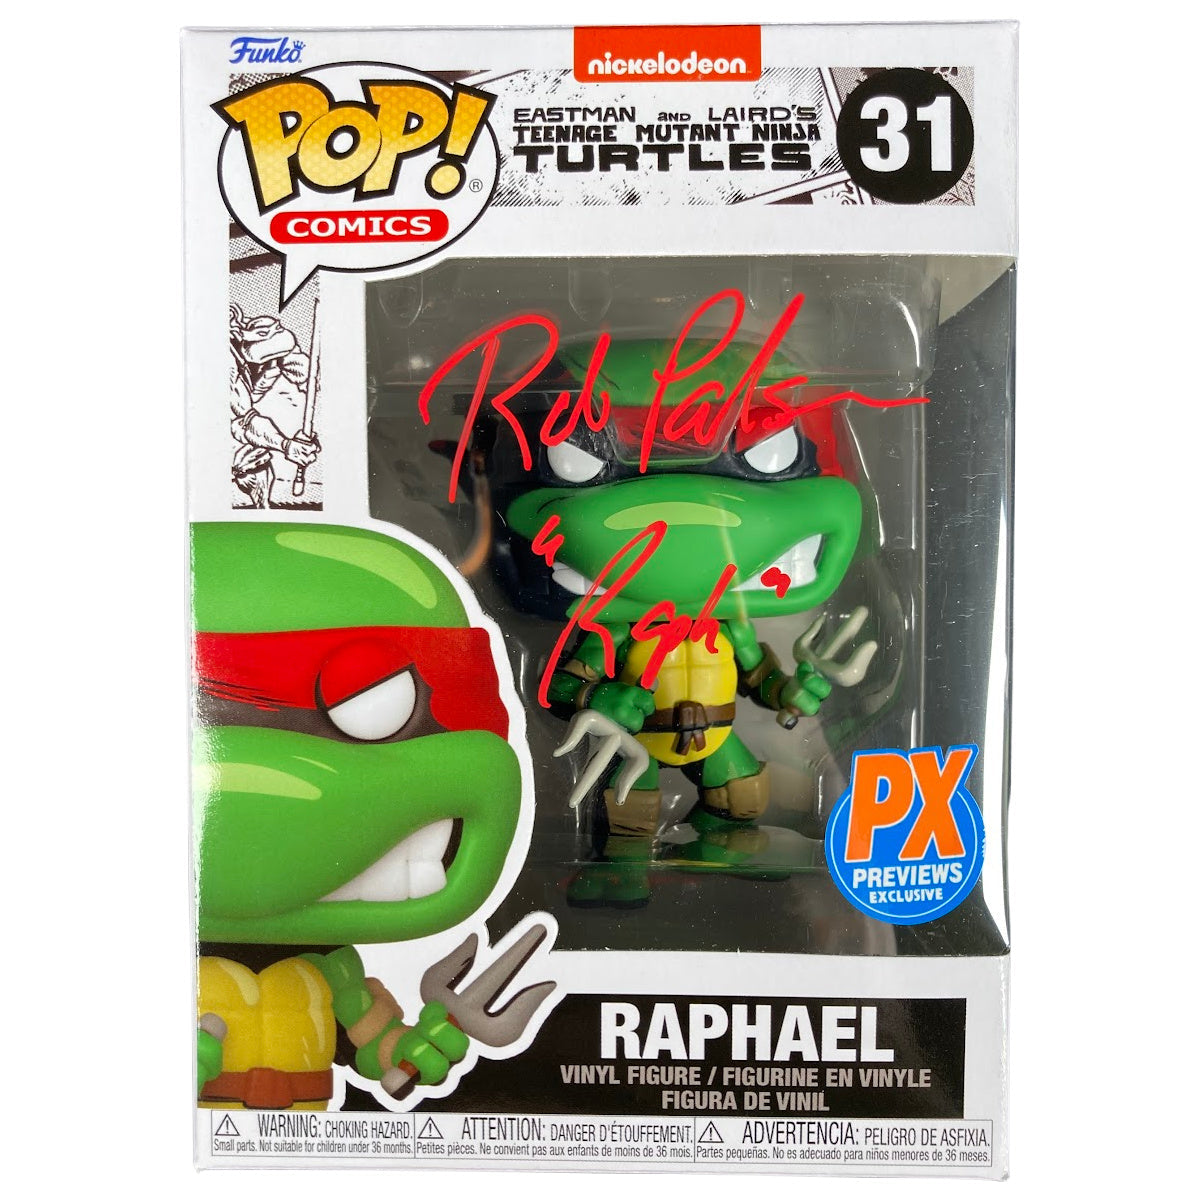 Rob Paulsen Signed Funko POP TMNT Ninja Turtles Raphael Autographed JSA COA